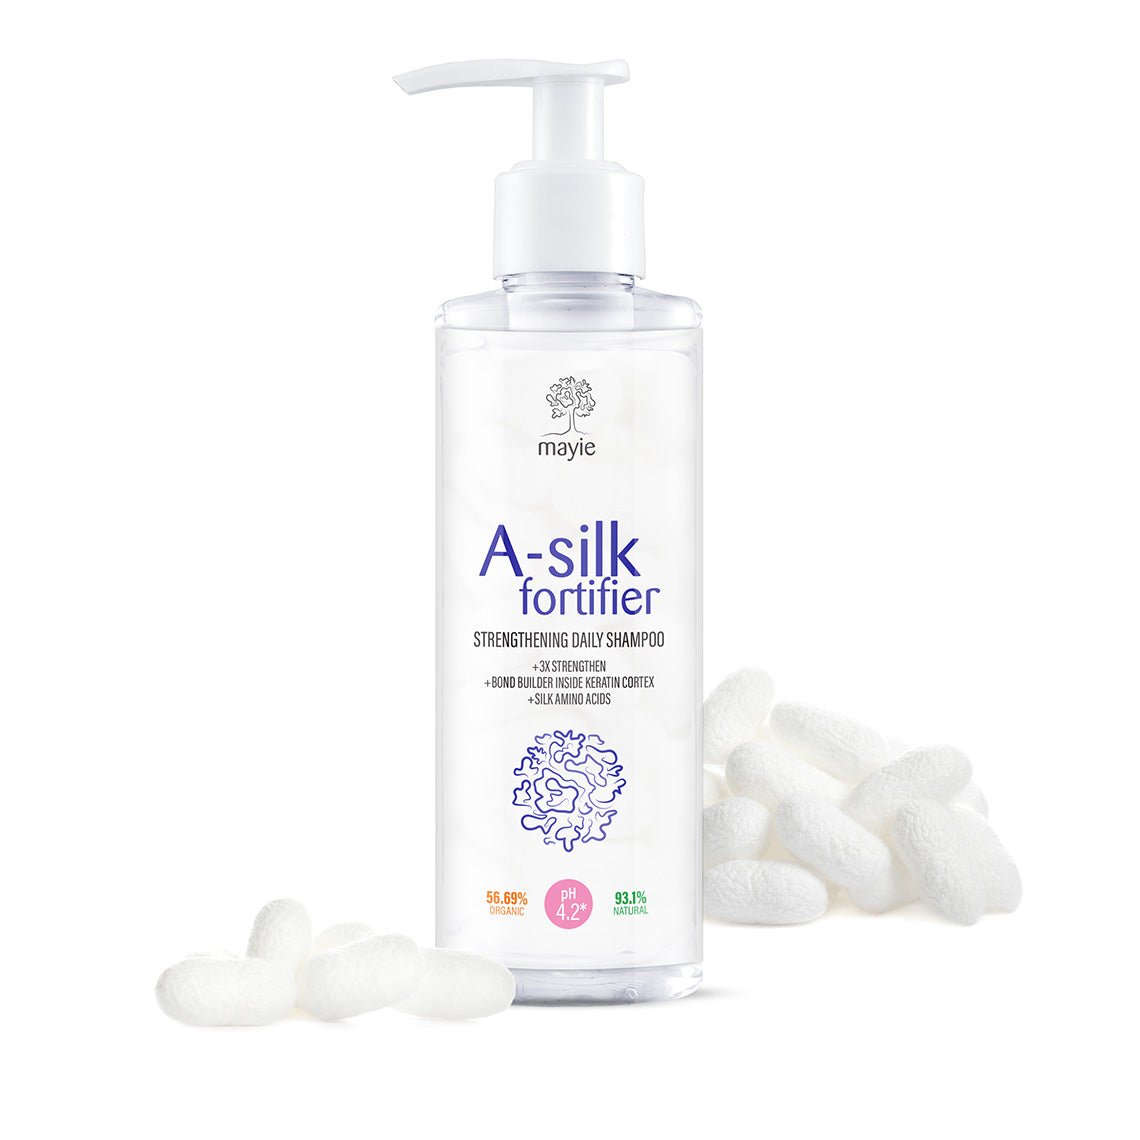 Mayie A-silk Fortifier - șampon zilnic pentru întărirea firului de păr